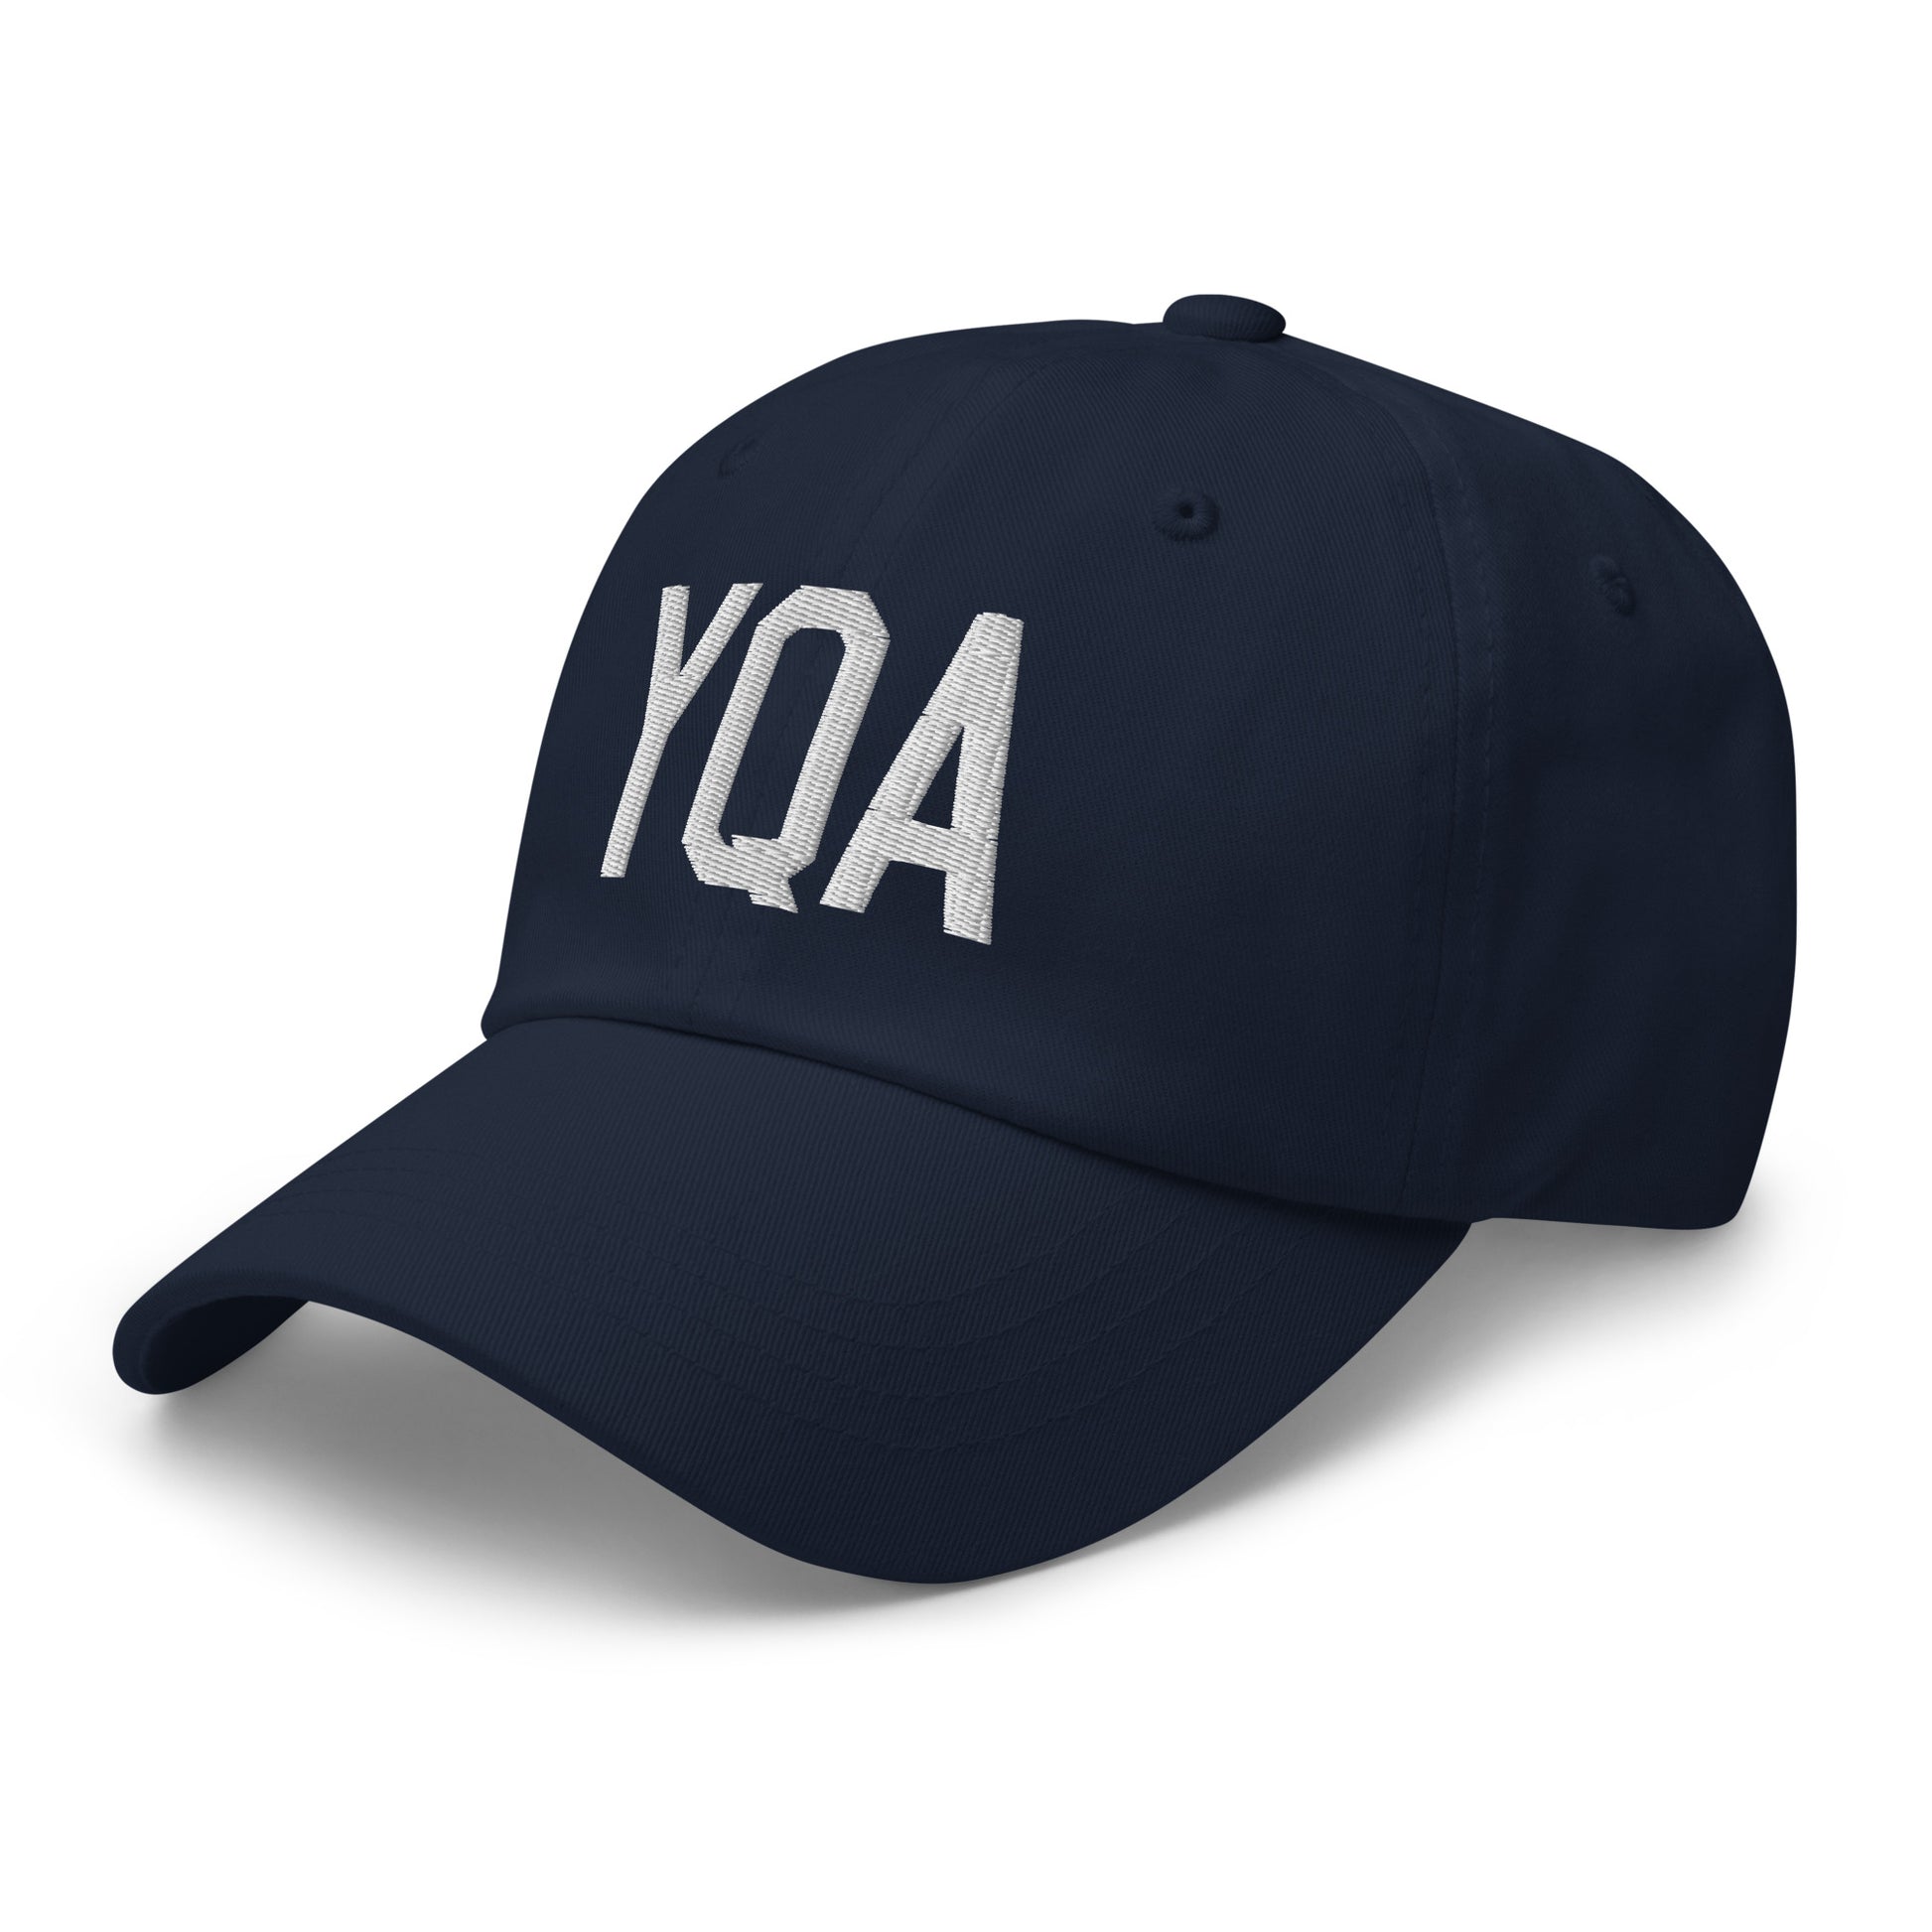 Airport Code Baseball Cap - White • YQA Muskoka • YHM Designs - Image 18